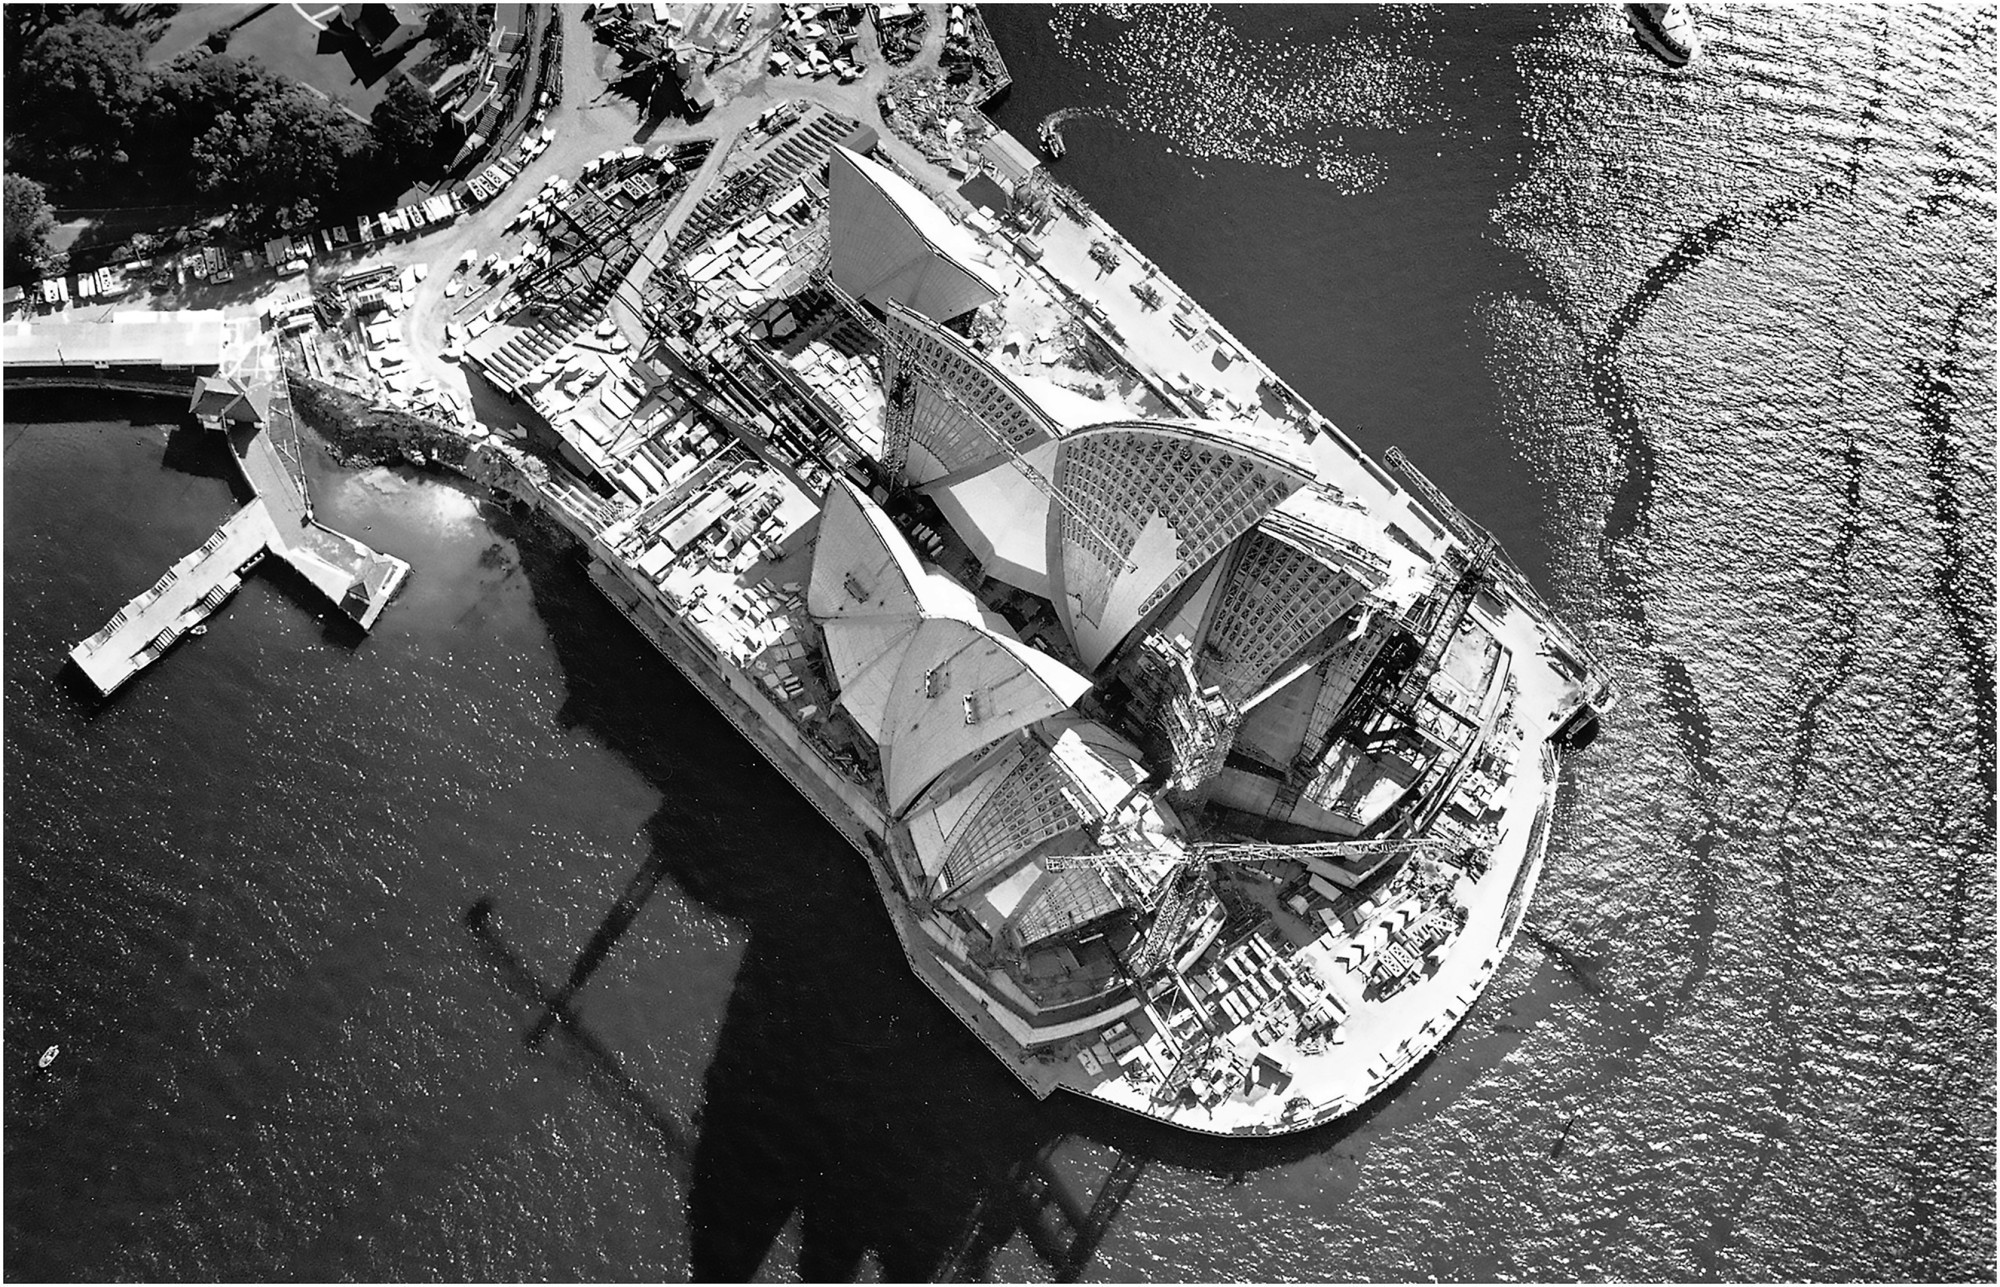 Opernhaus Sydney Bauphase 1963-1976